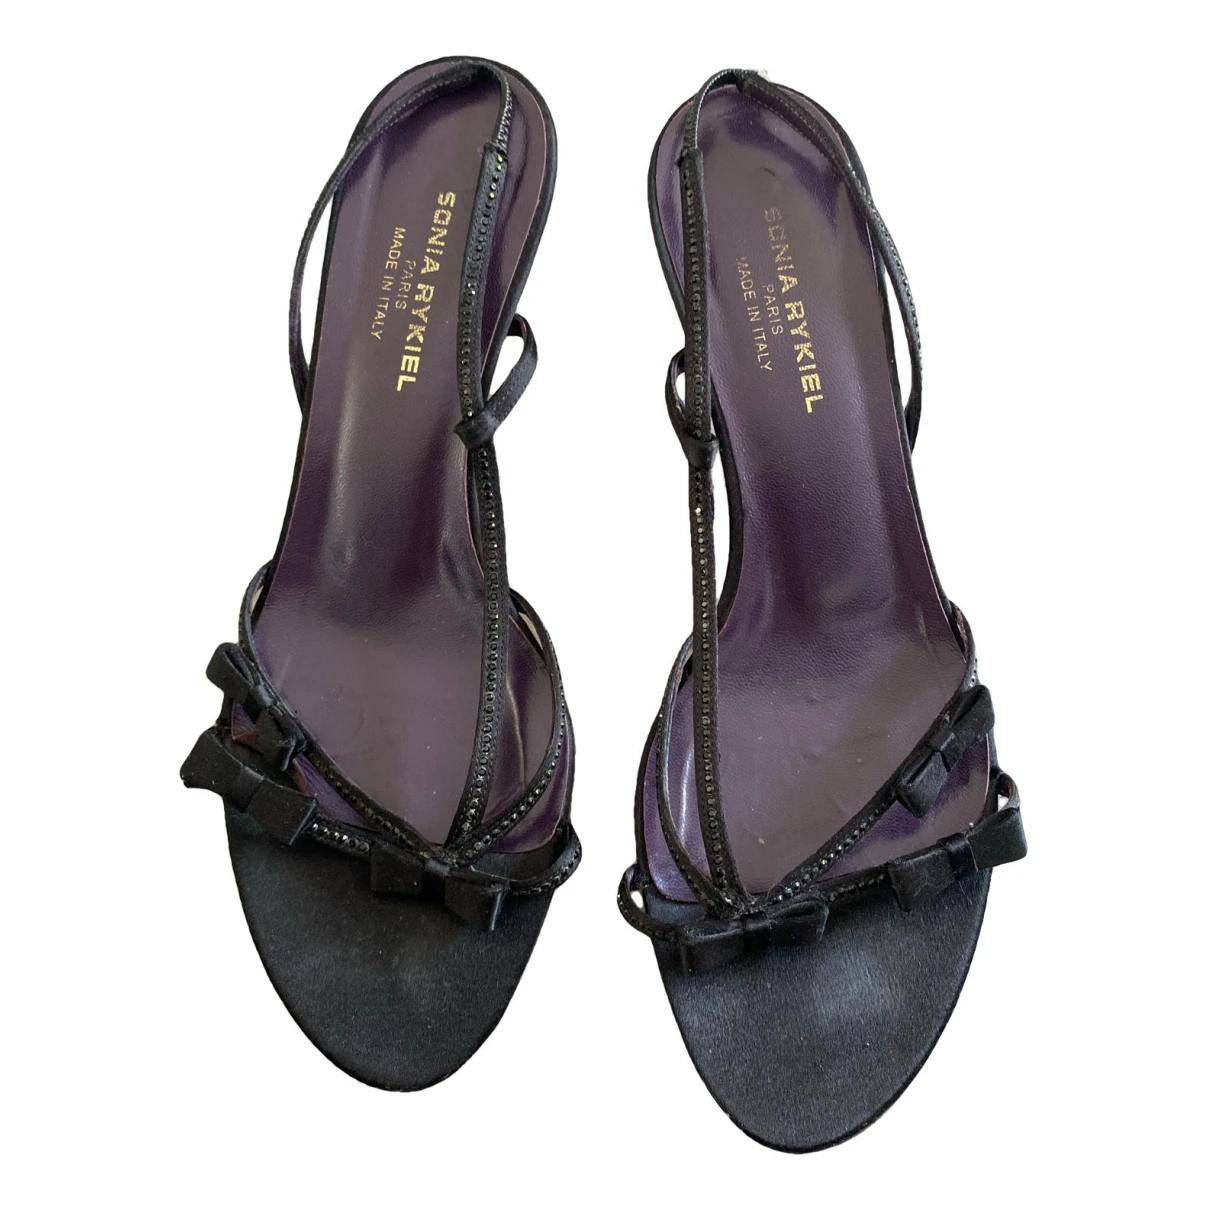 Pre-owned Sonia Rykiel Leather Heels In Black